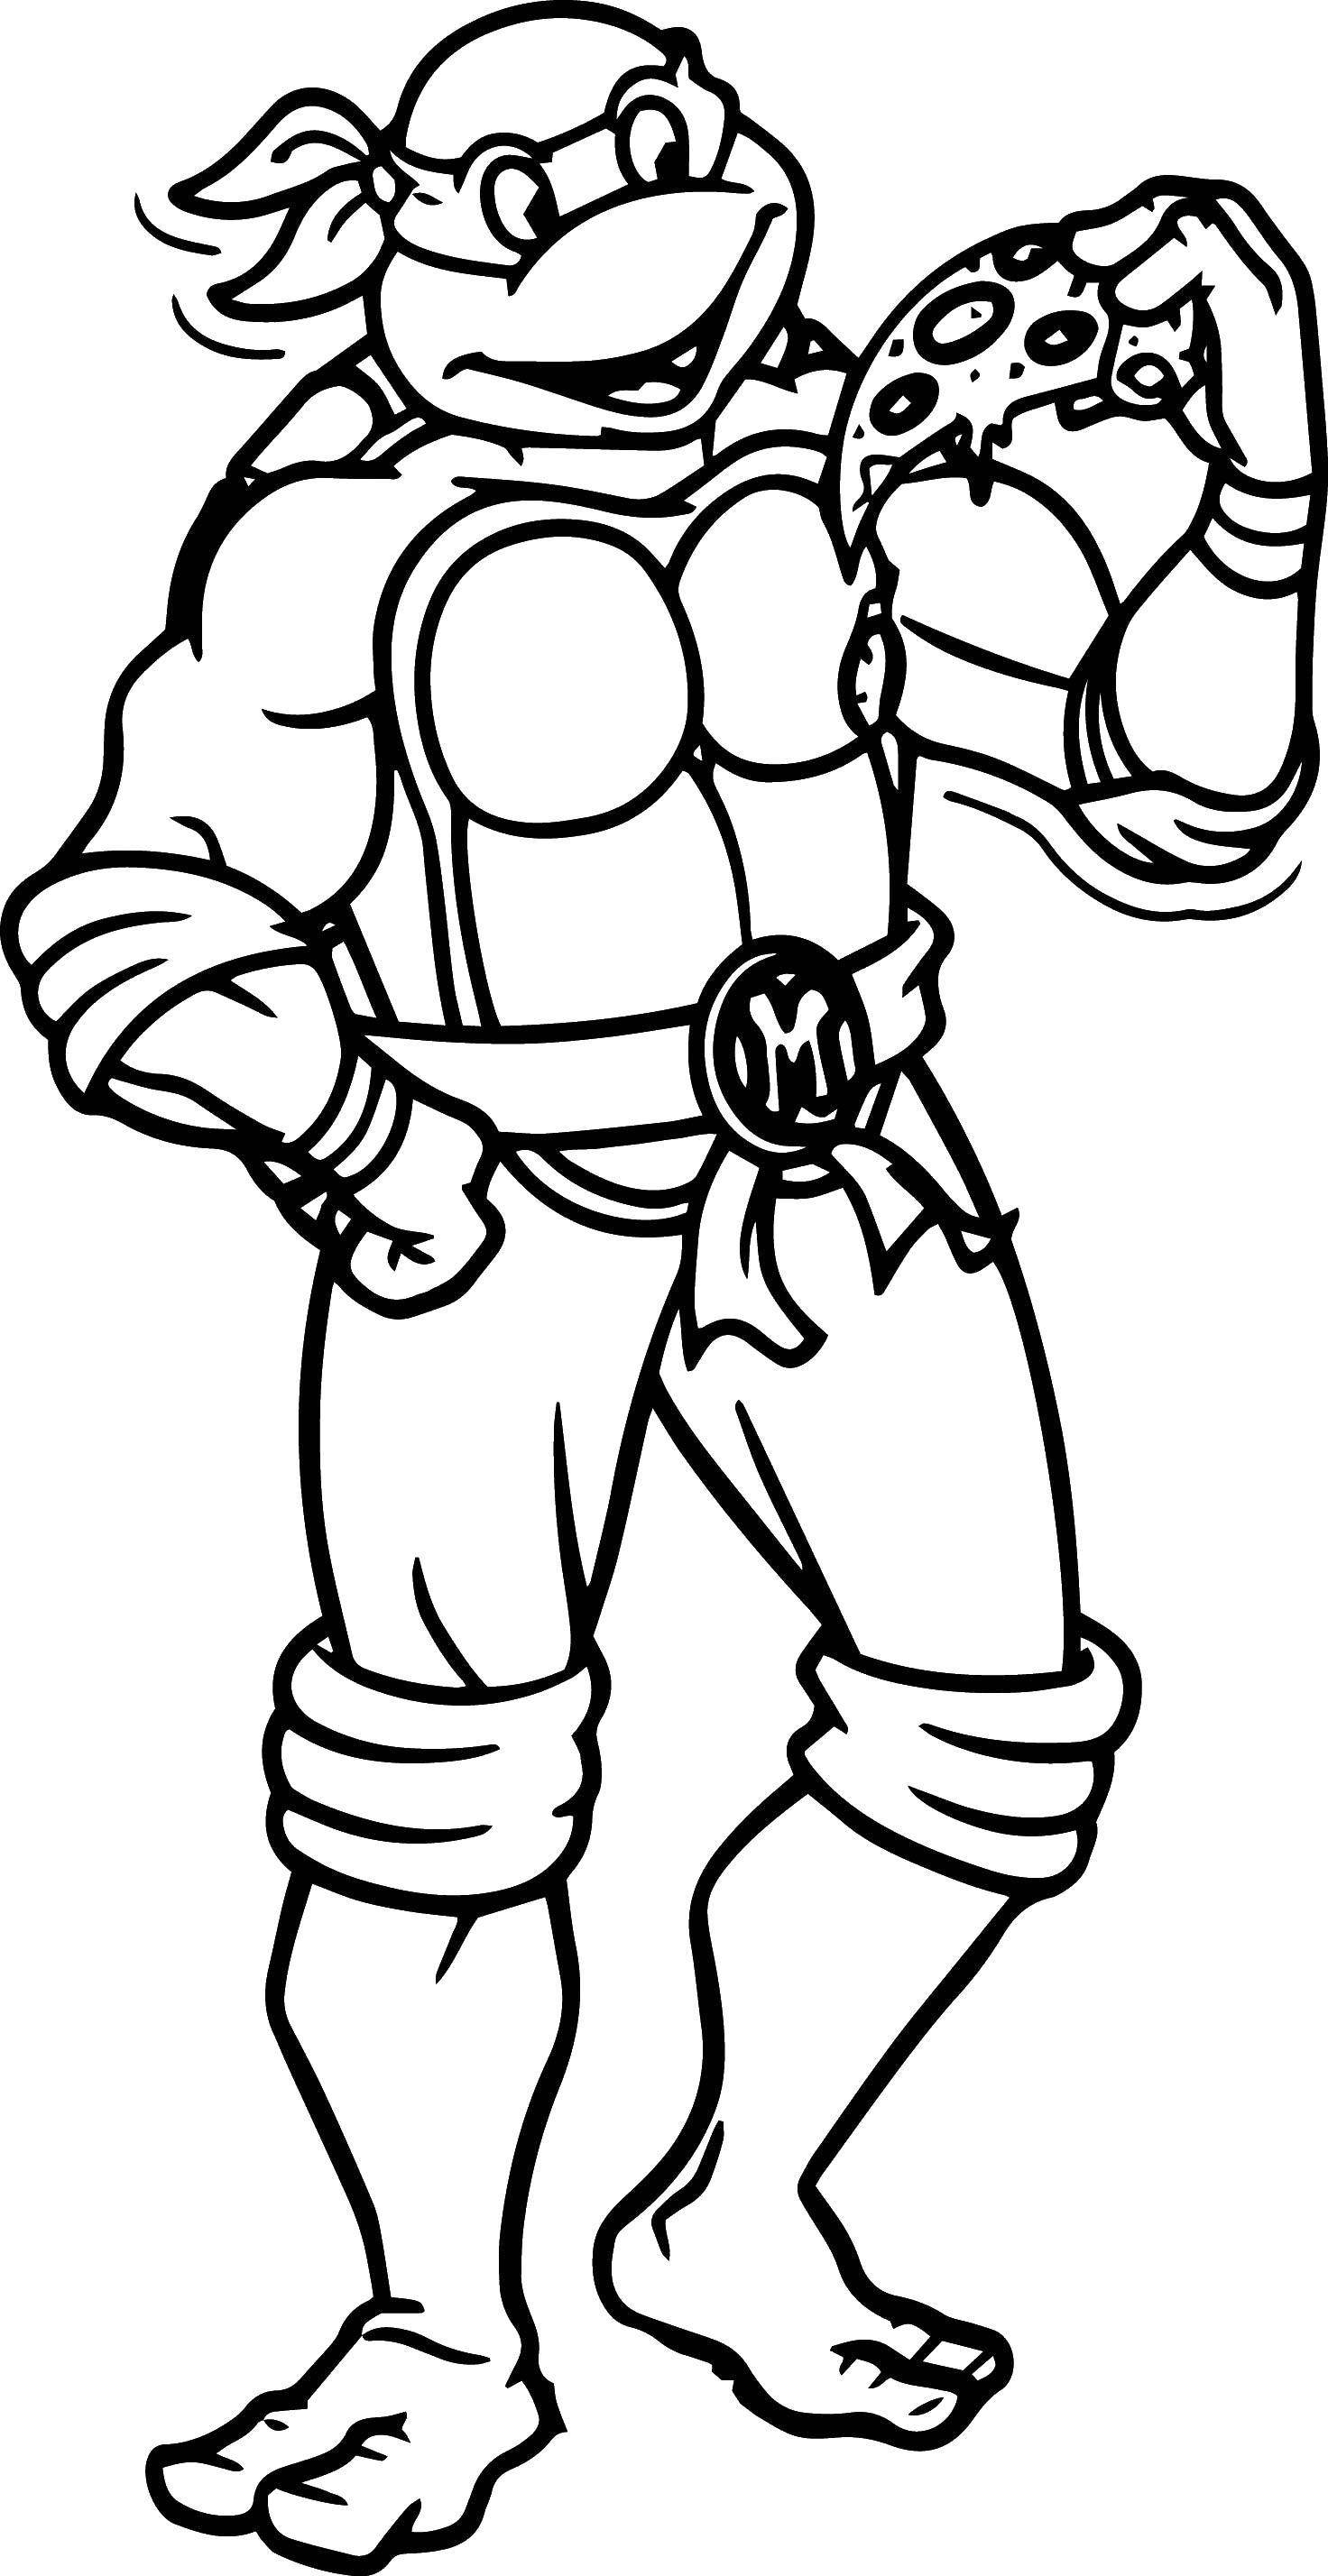 Coloring Michelangelo loves pizza. Category teenage mutant ninja turtles. Tags:  Comics, Teenage Mutant Ninja Turtles.